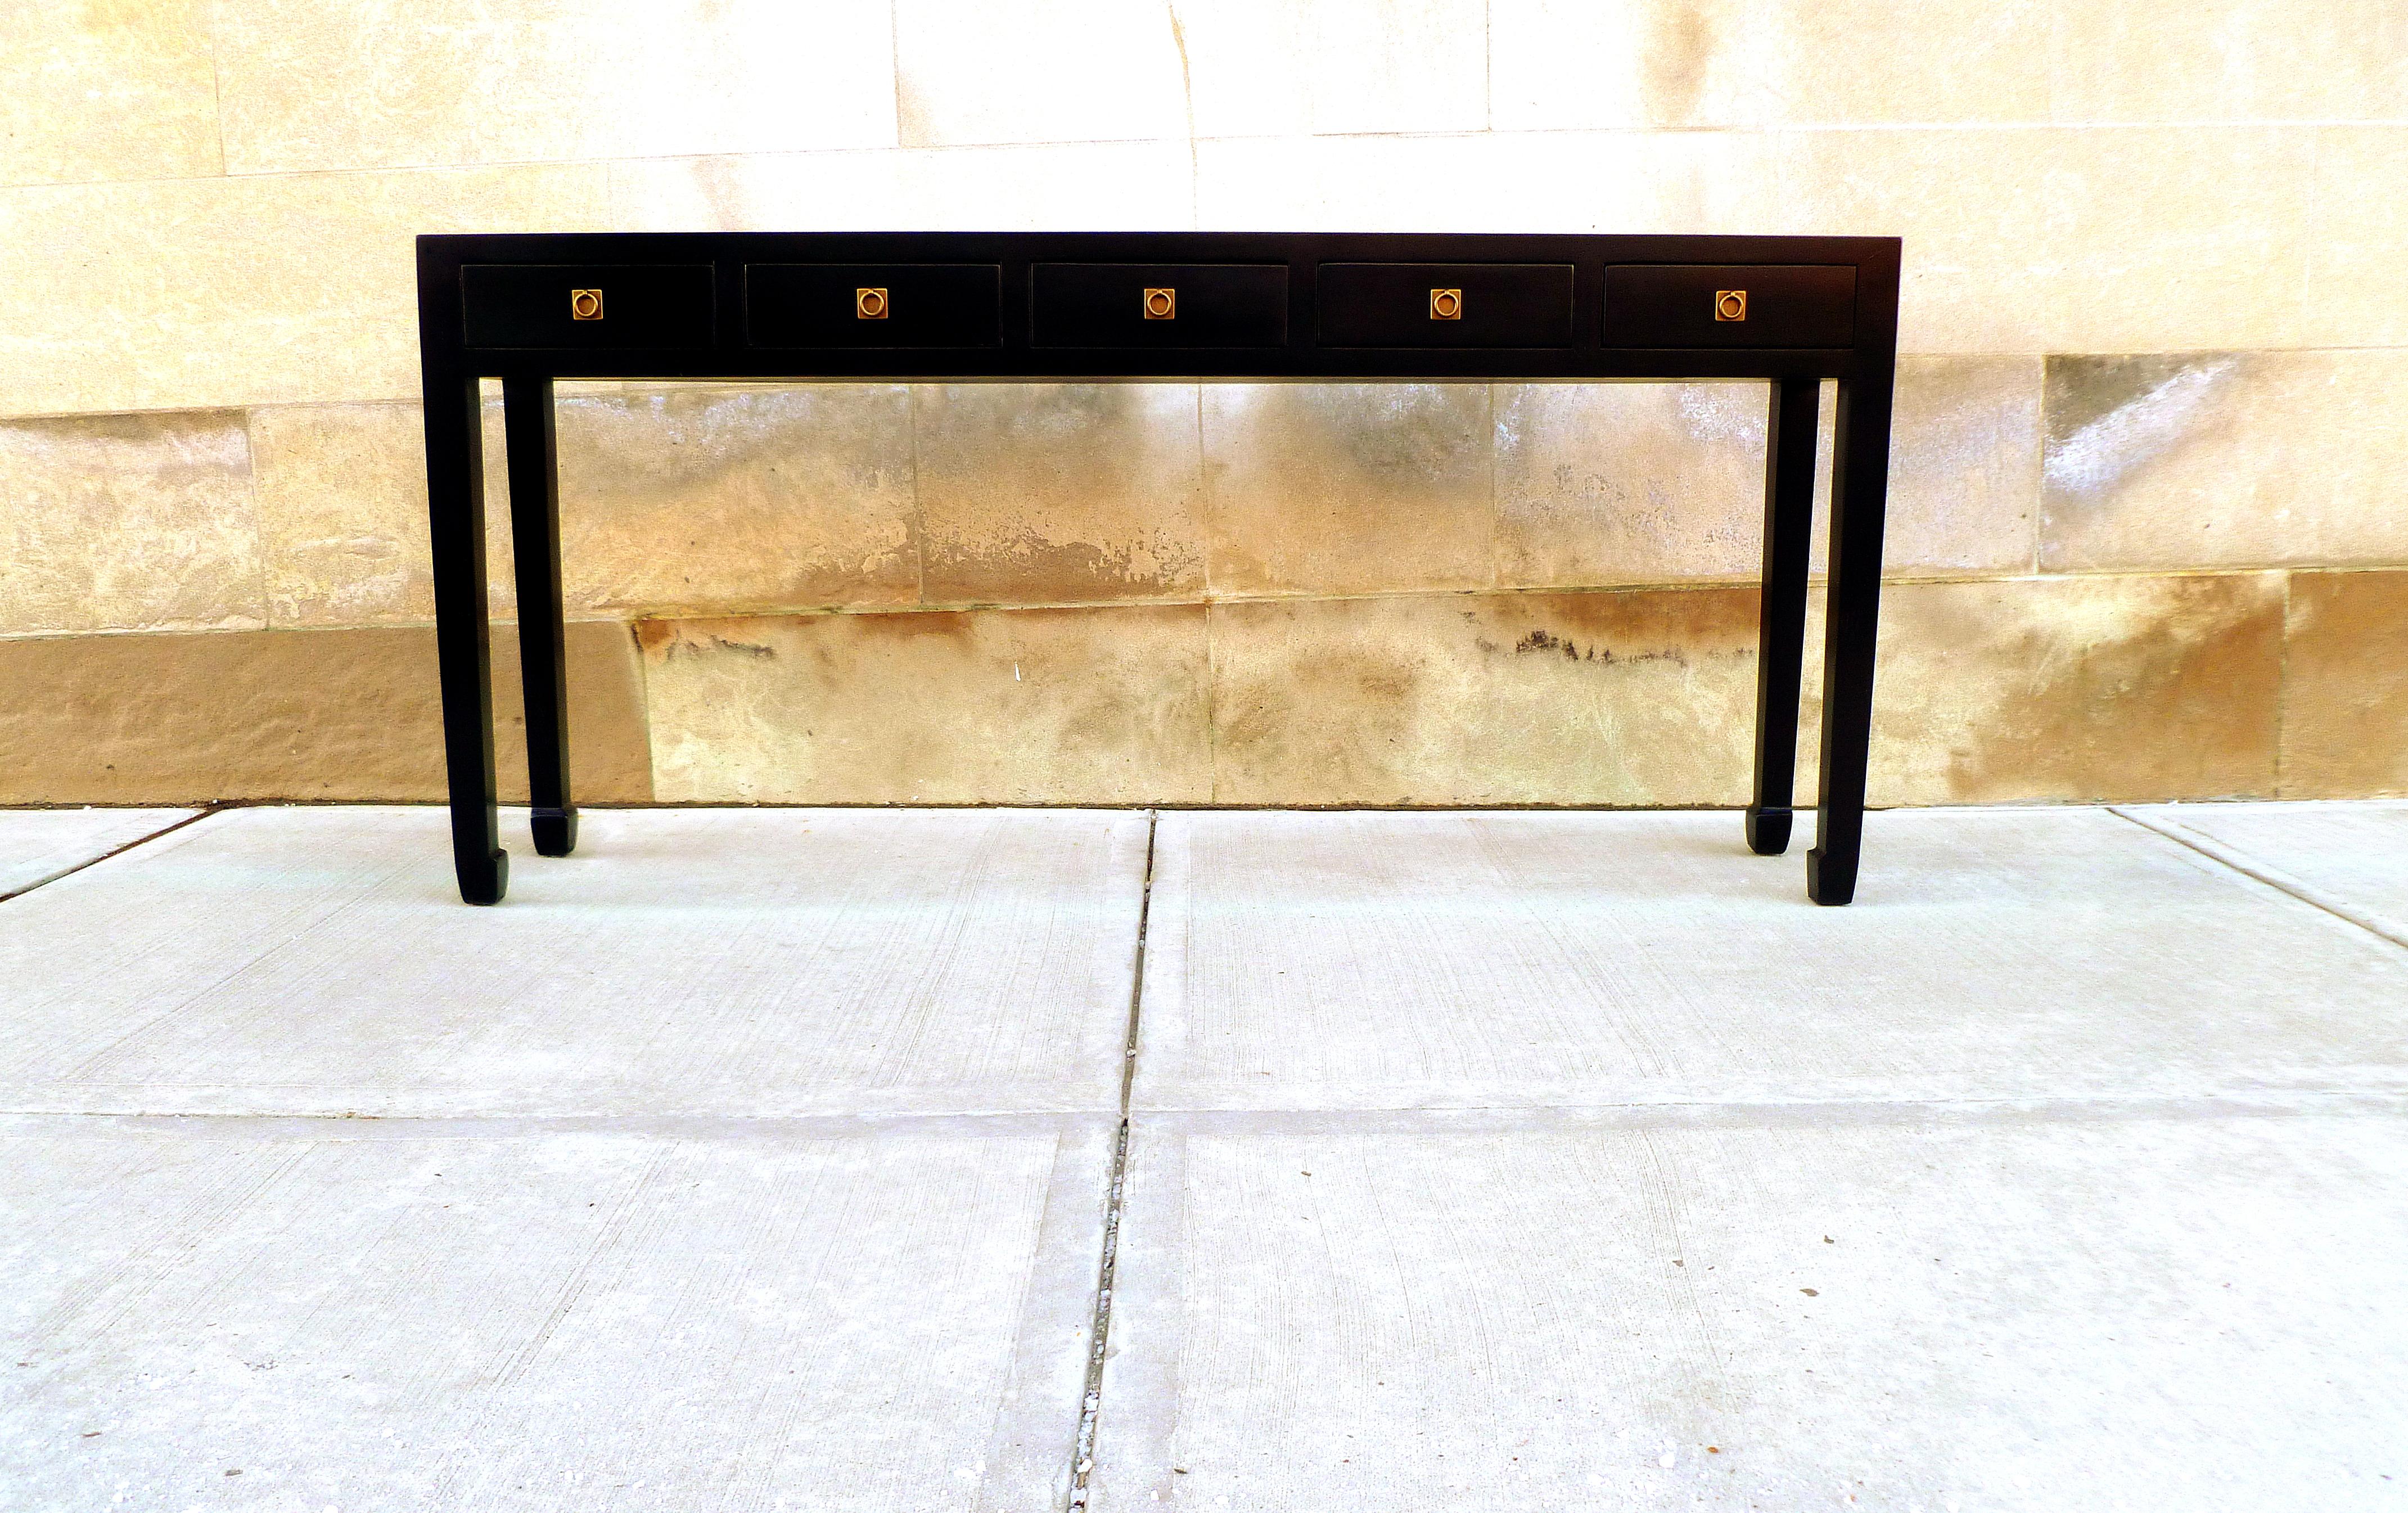 Élégante table console en laque noire avec cinq tiroirs, garniture en laiton. Une forme simple et une belle couleur. Nous proposons des meubles de qualité aux finitions élégantes, qui ont été publiés à plusieurs reprises dans les magazines